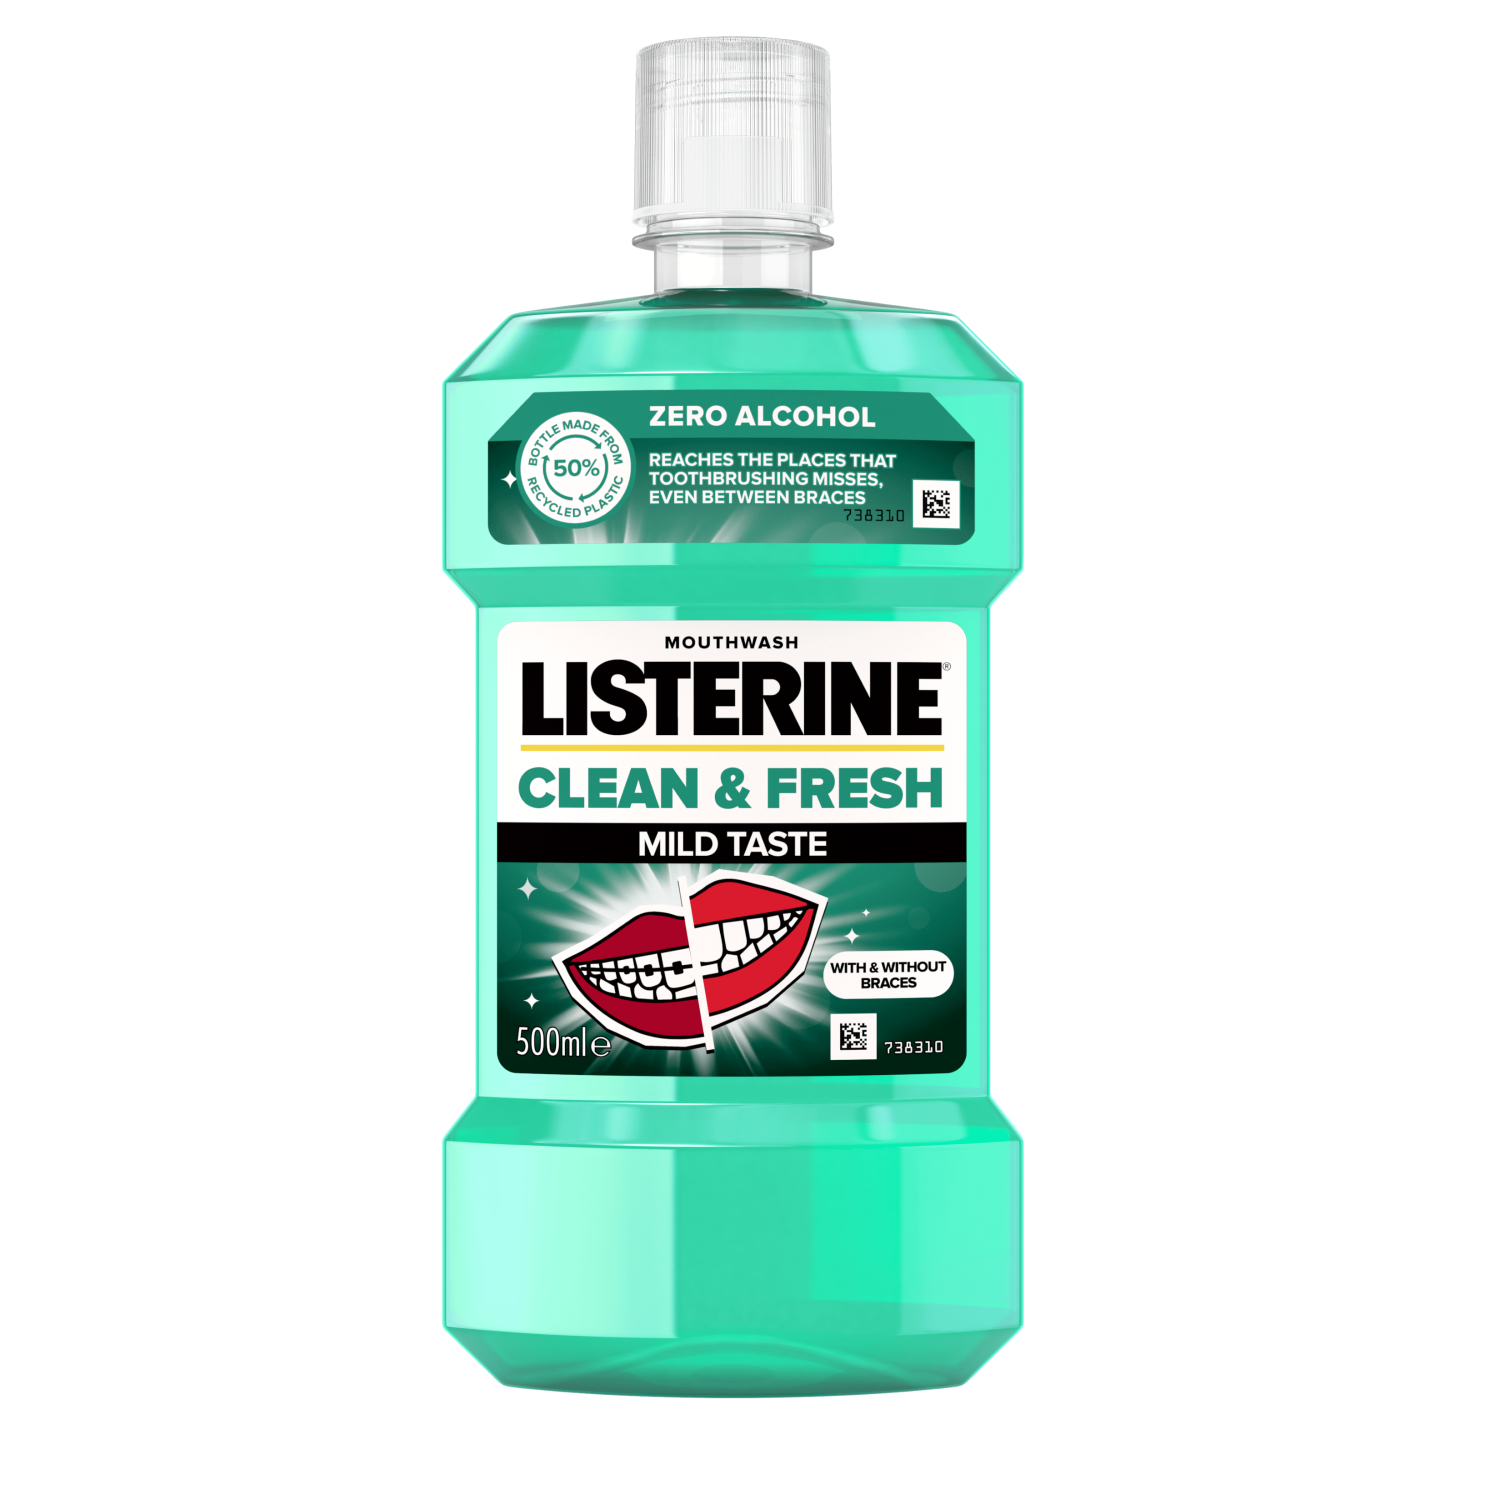 Listerine_Clean_Fresh